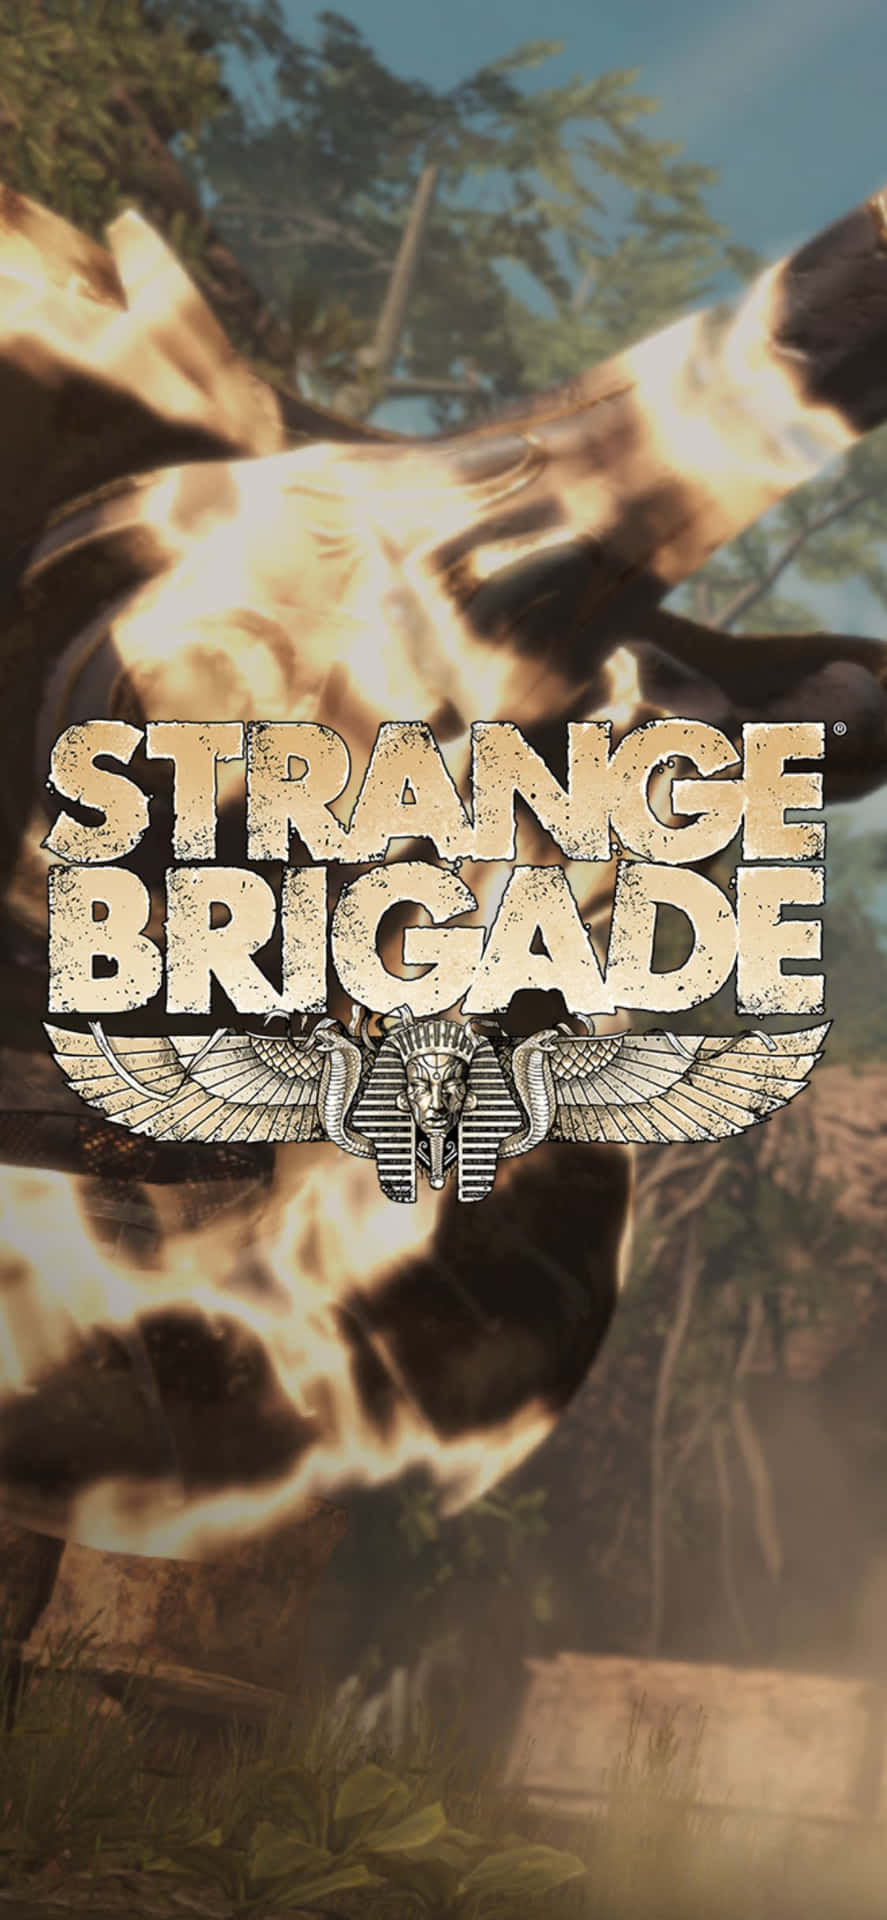 Flaschemit Feuerwaffen Iphone X Strange Brigade Hintergrund